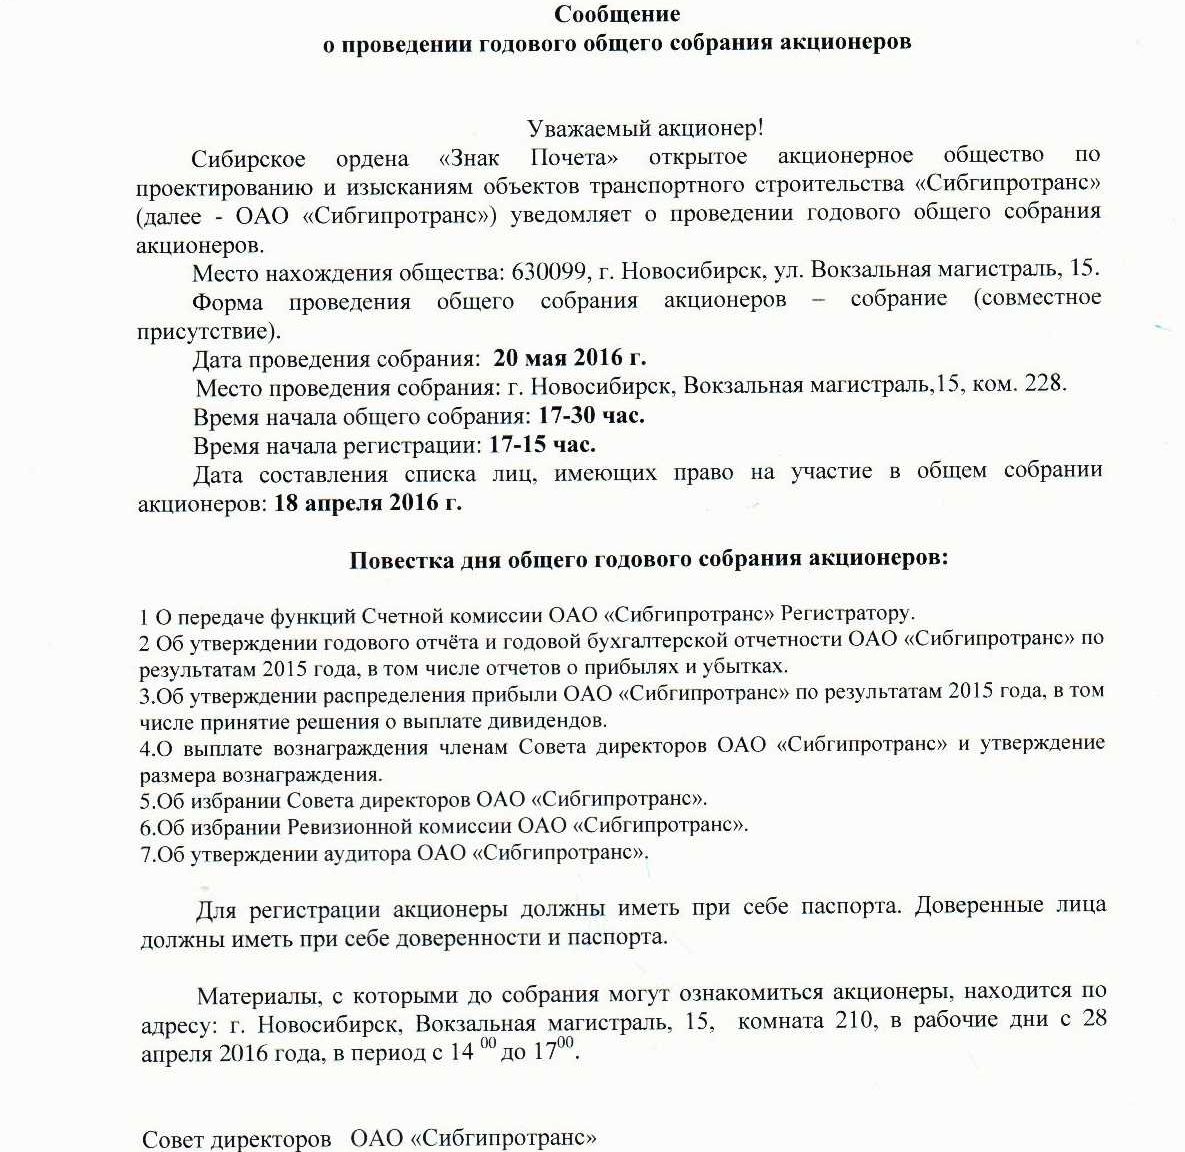 Годовое собрание акционеров ОАО Сибгипротранс